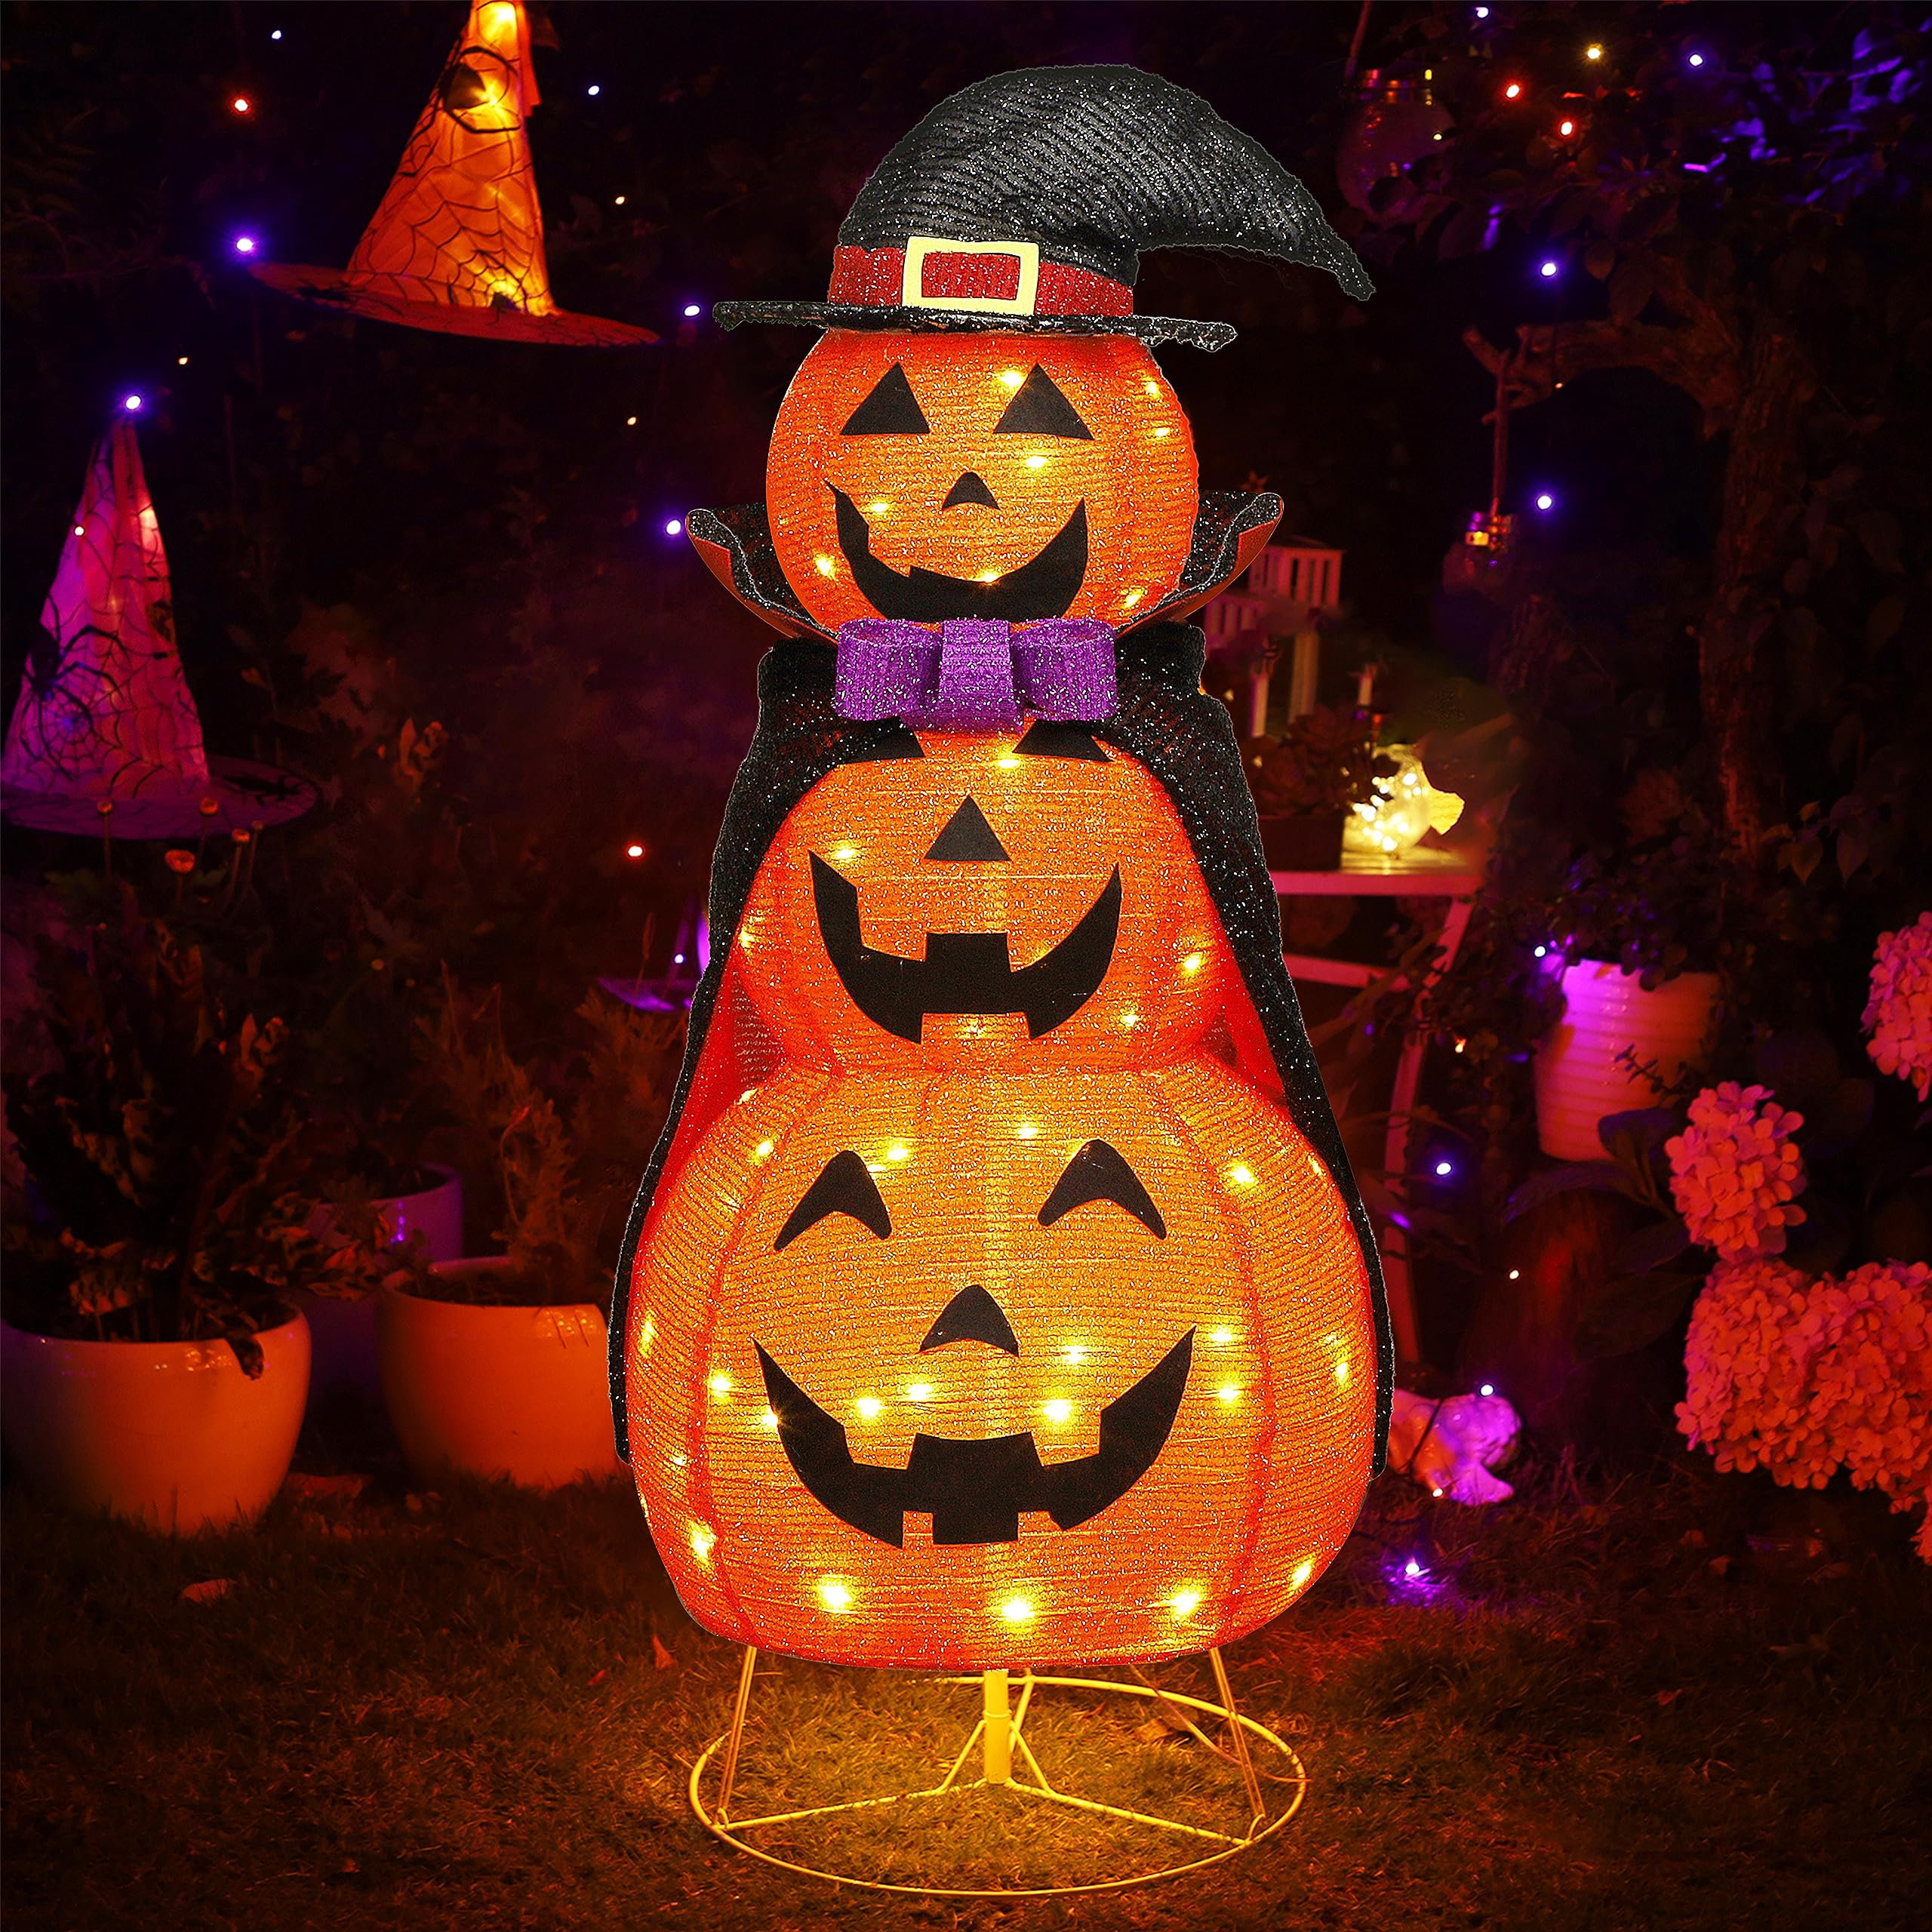 https://assets.wfcdn.com/im/56324563/compr-r85/2539/253995679/6-pack-light-up-halloween-jack-o-lantern-decorative-pumpkin.jpg